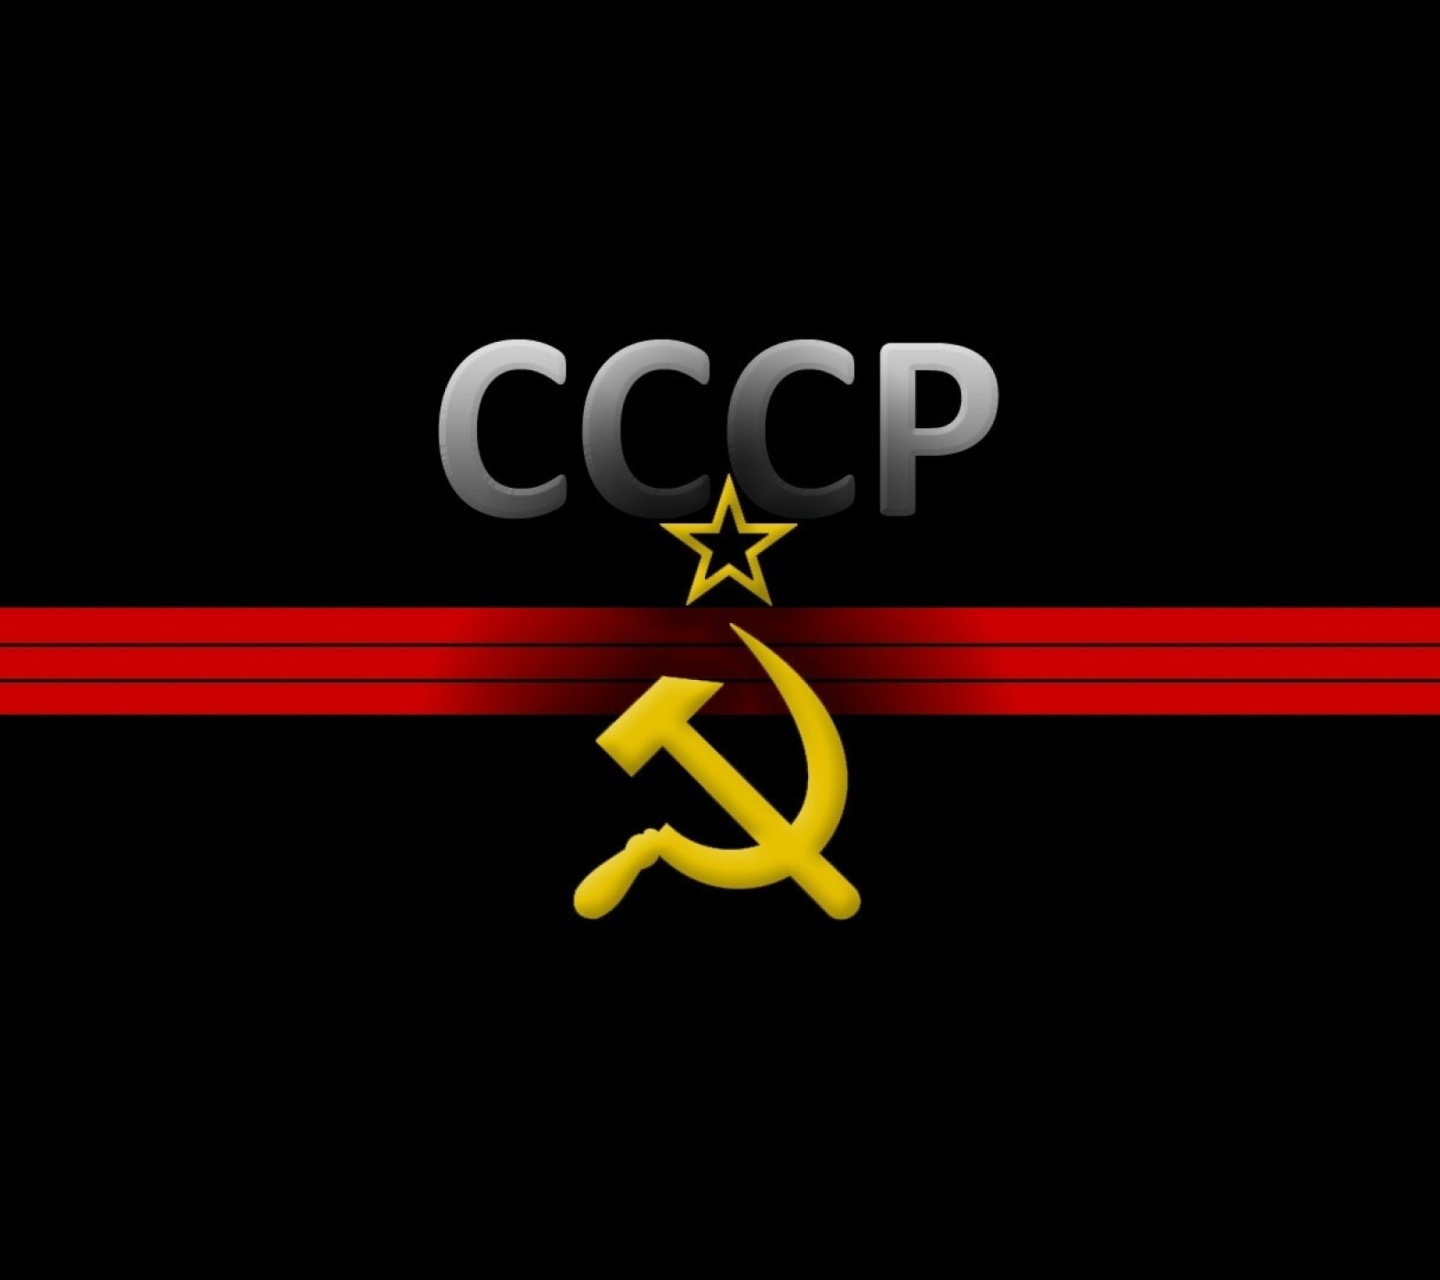 USSR and Communism Symbol screenshot #1 1440x1280